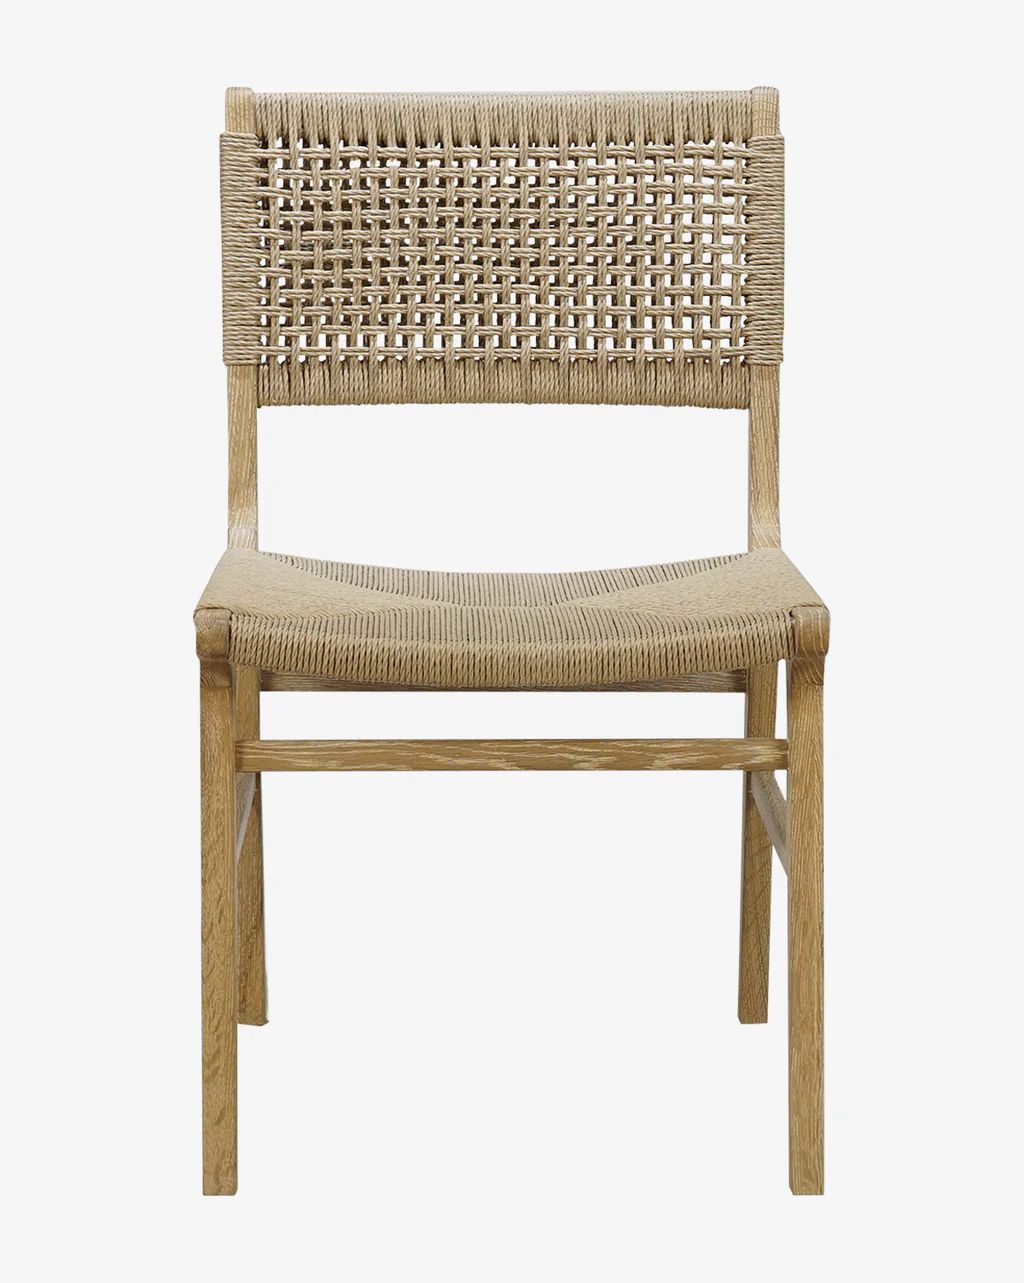 Blaise Chair | McGee & Co.